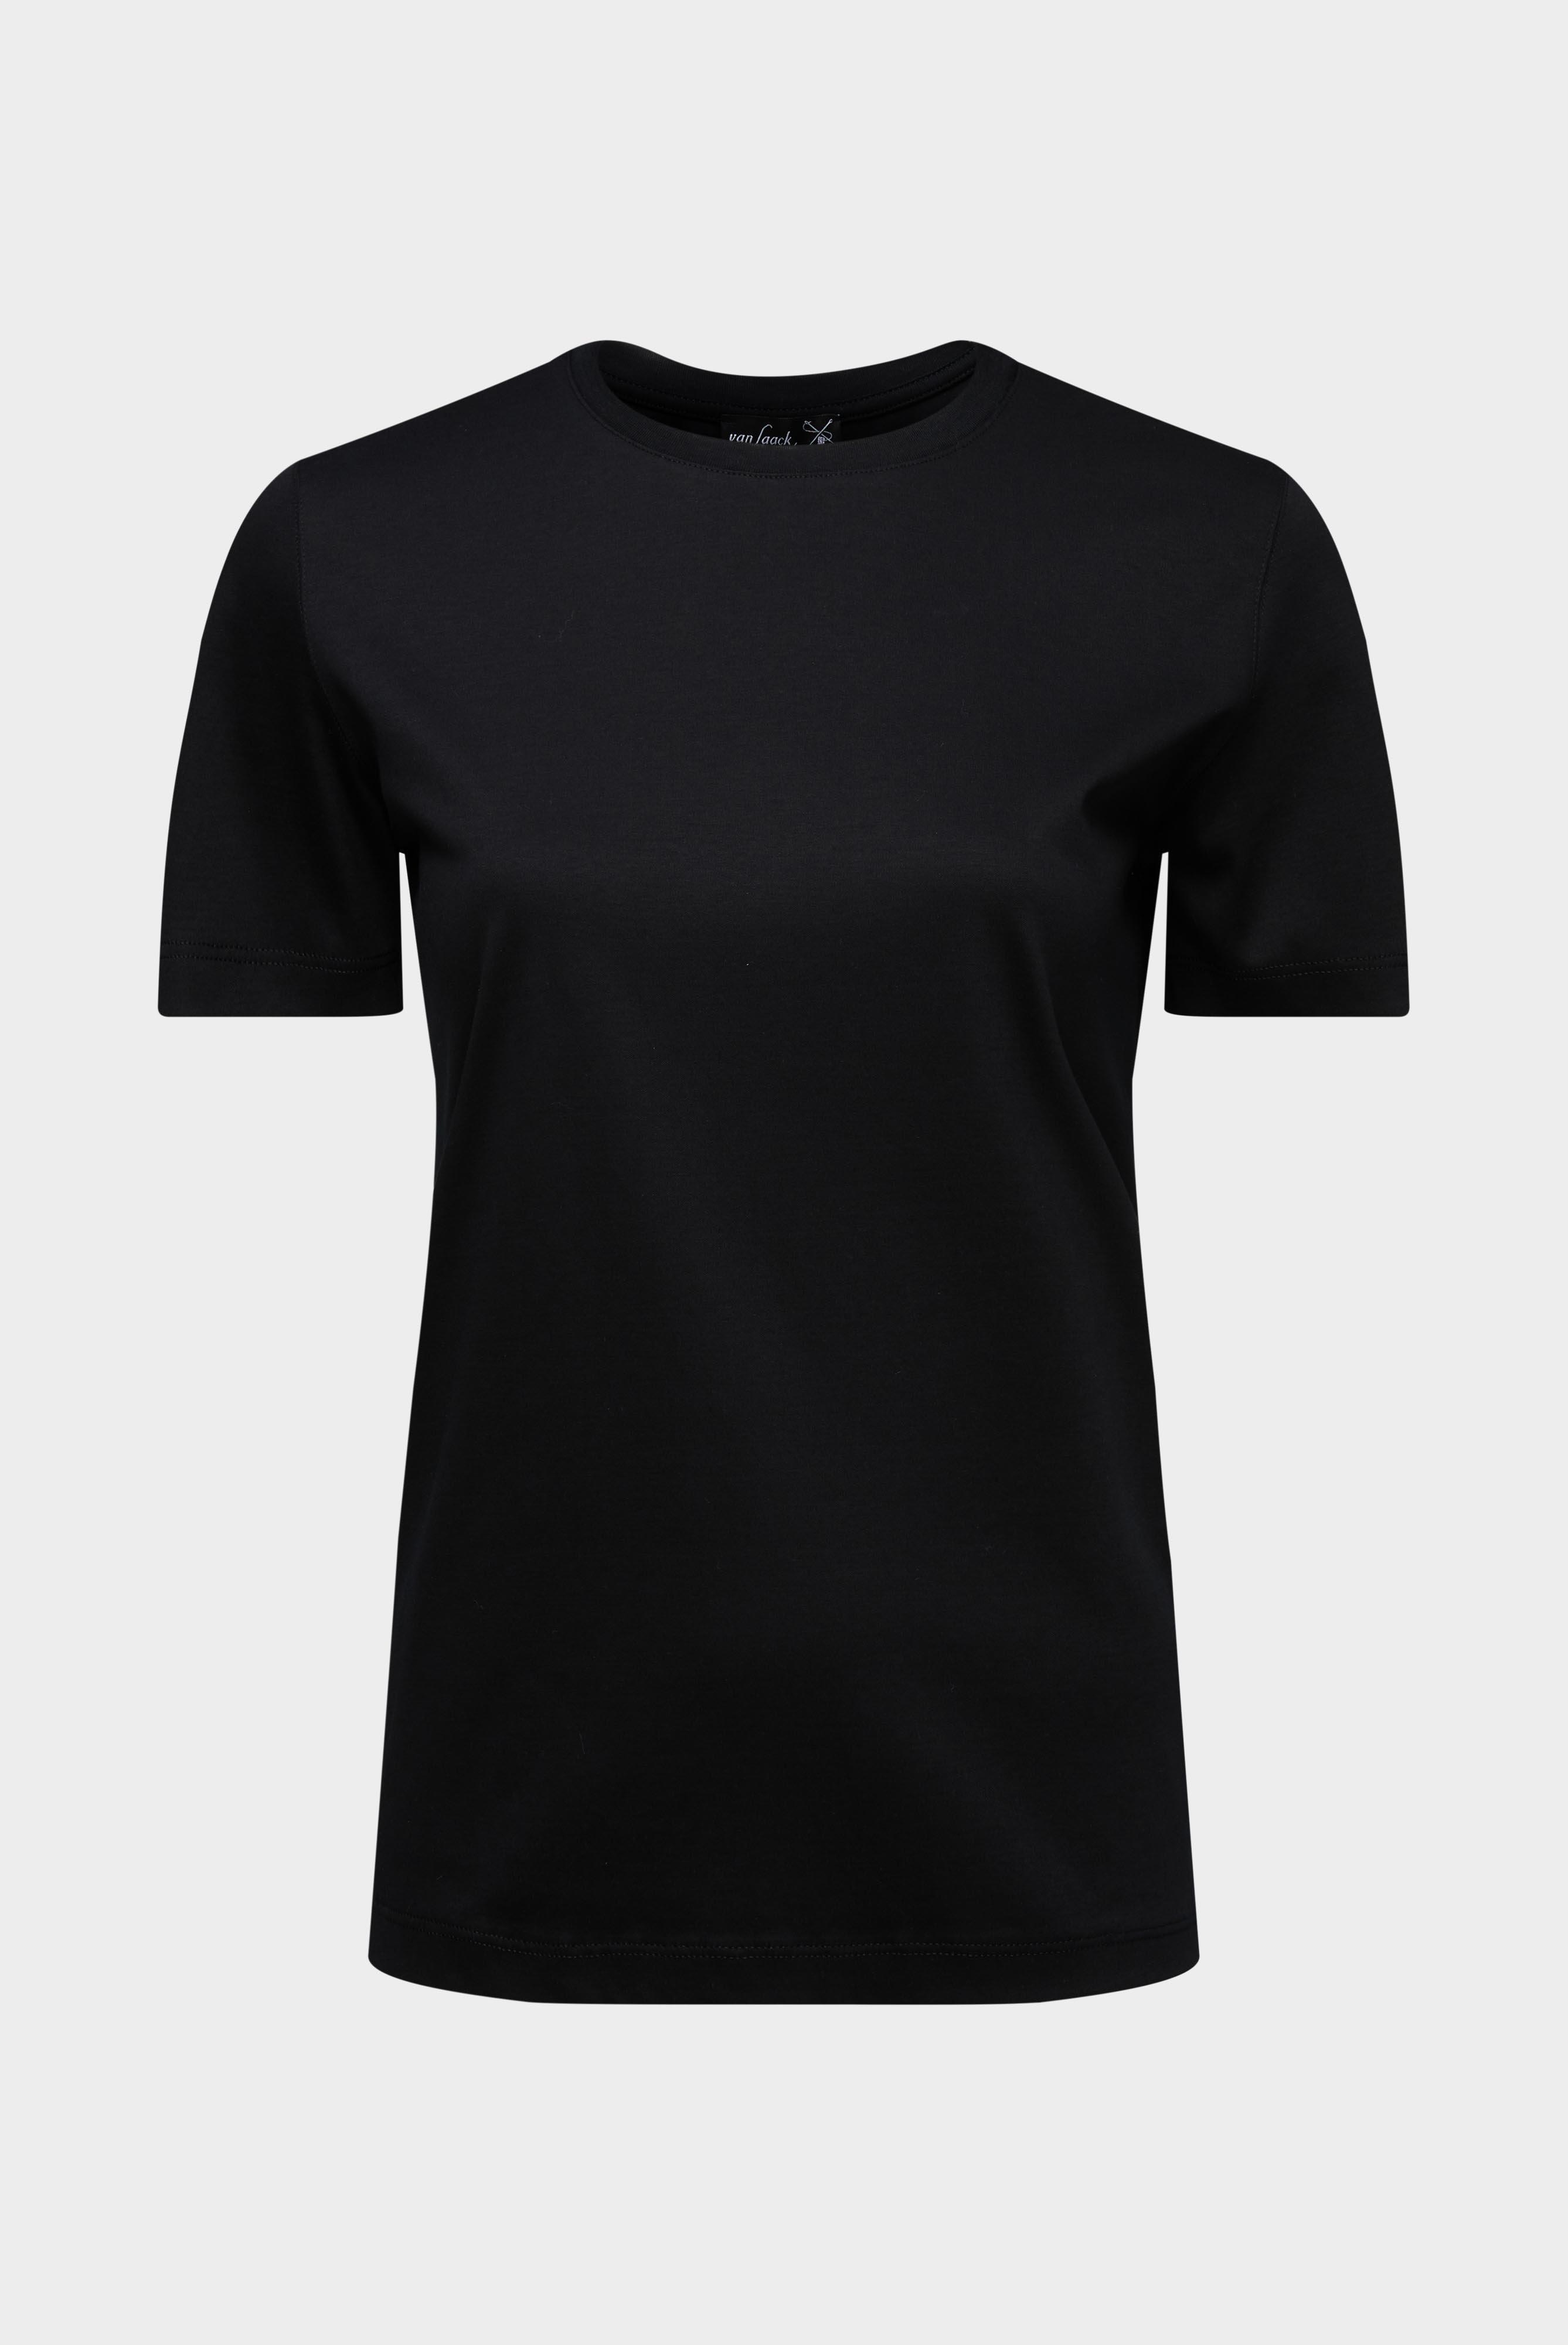 Tops & T-Shirts+Jersey T-Shirt+05.6384.18.180031.099.48